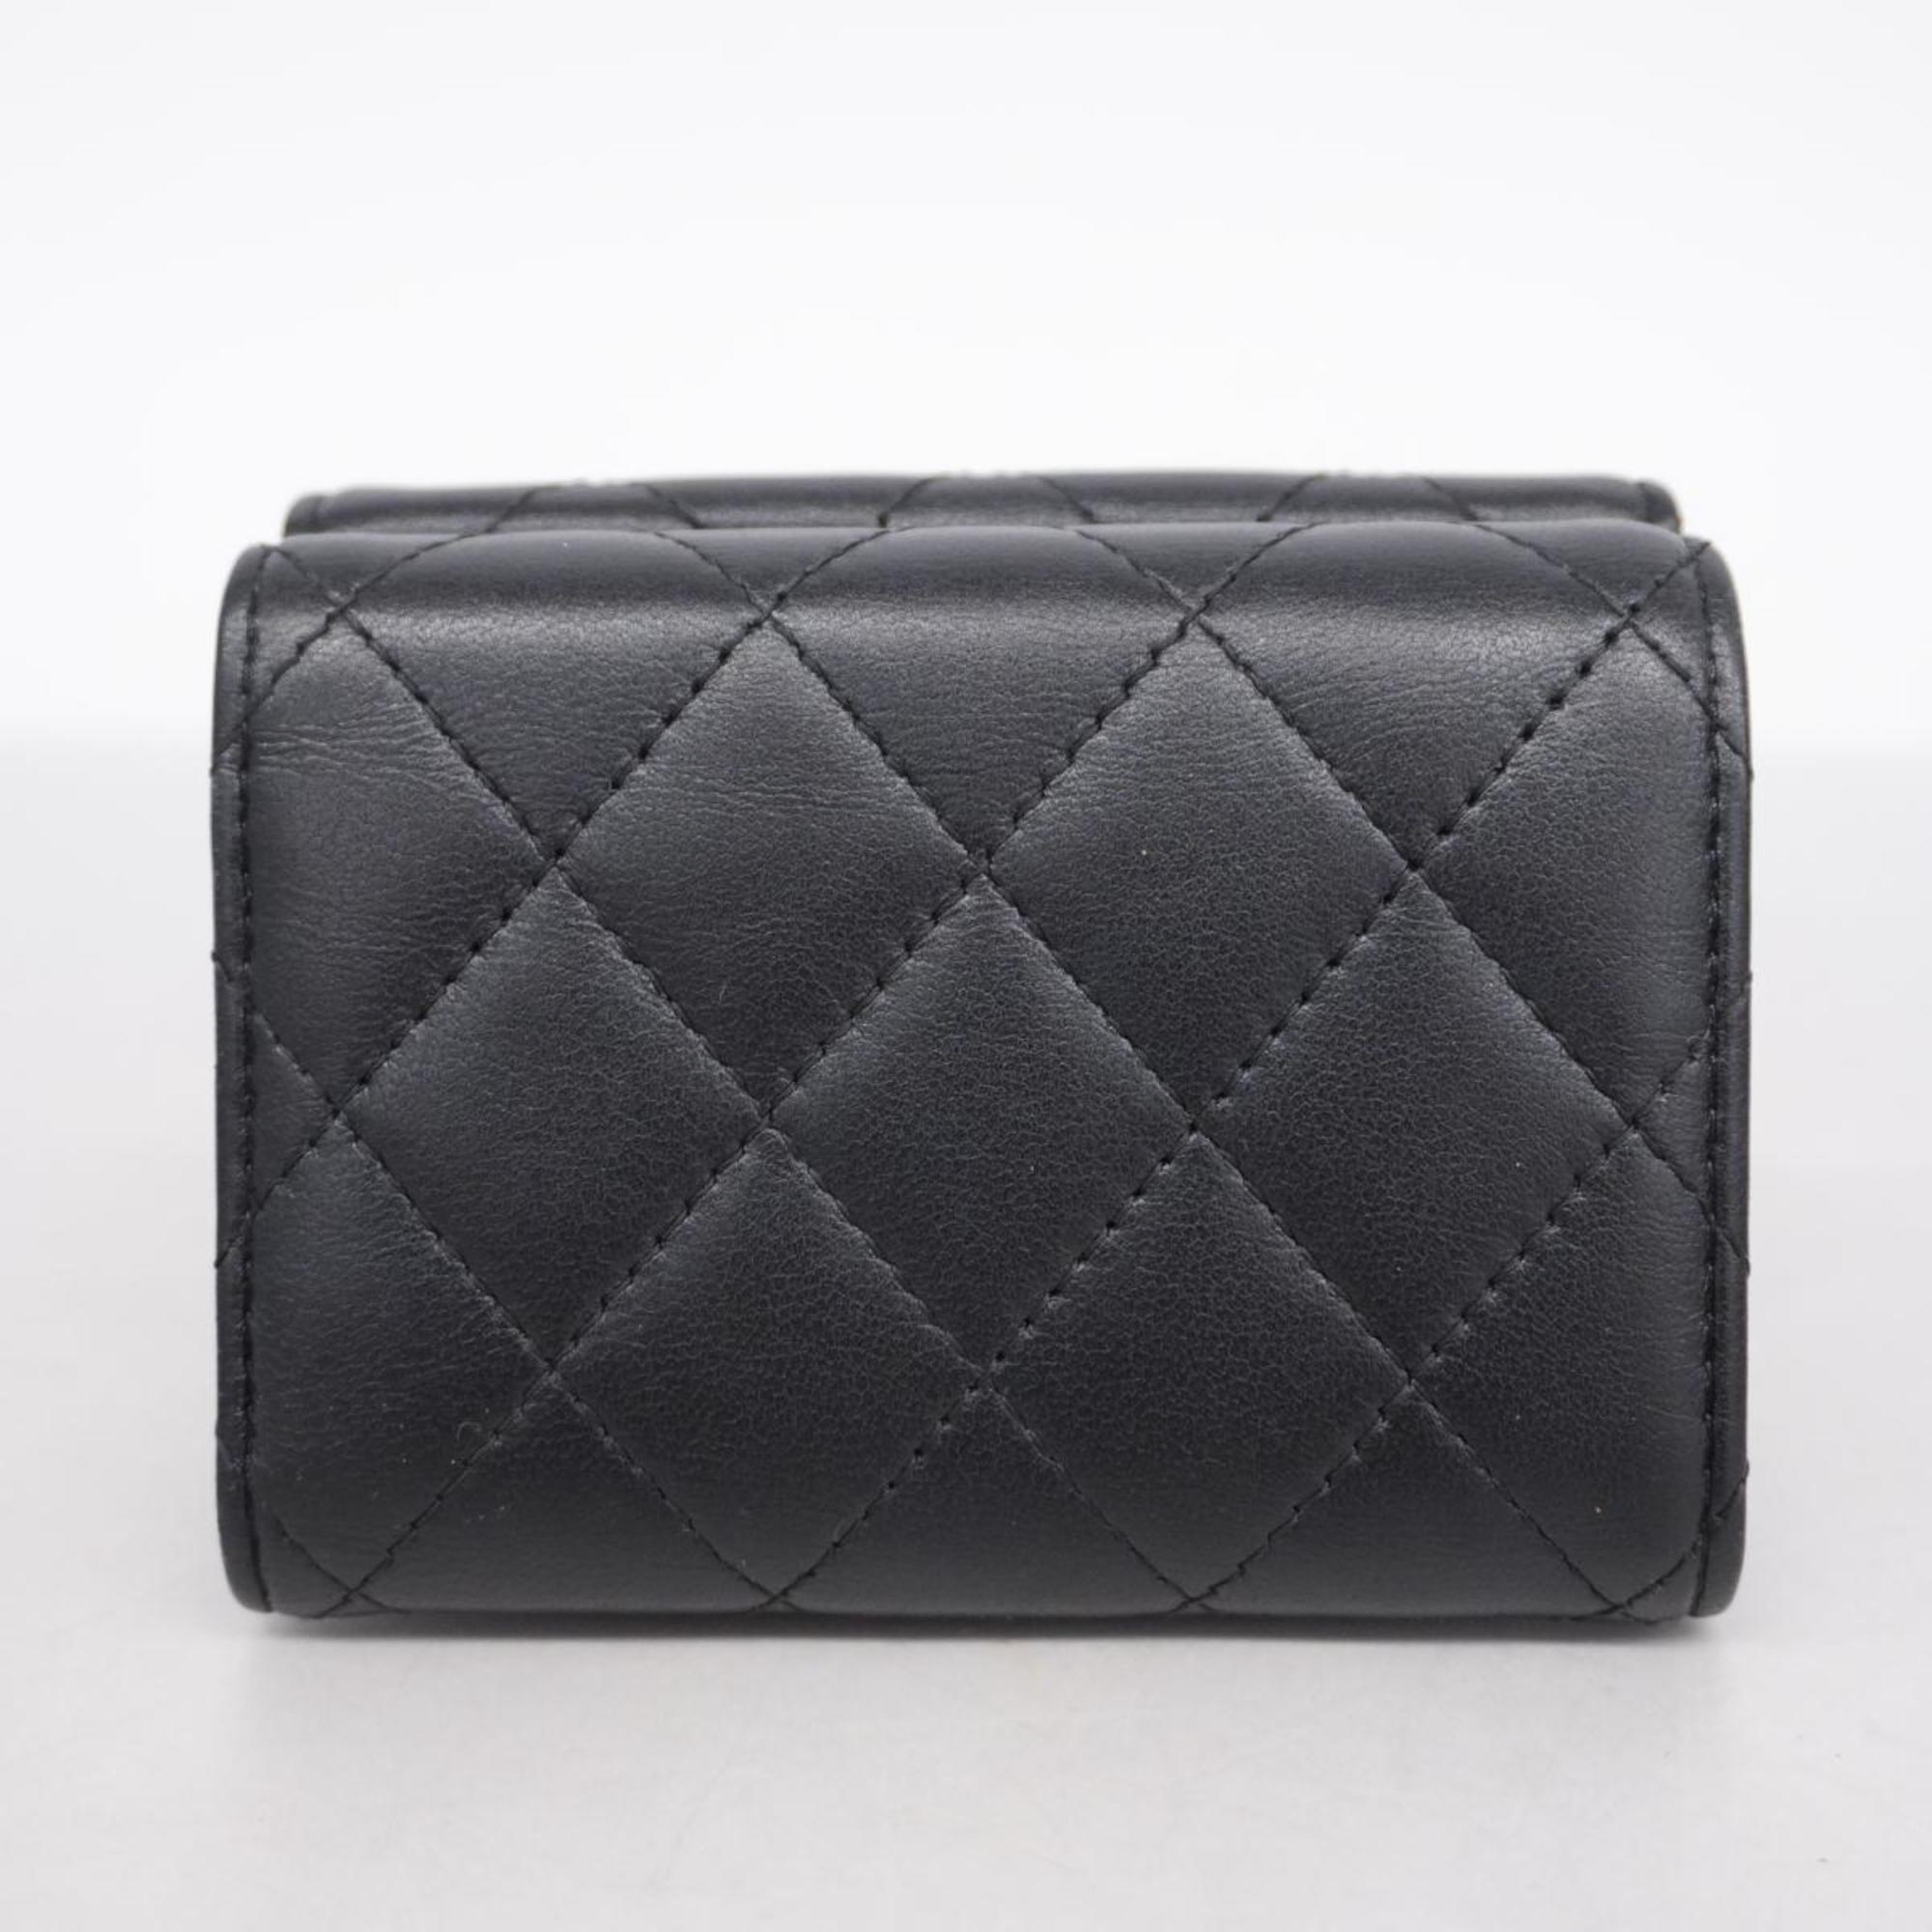 シャネル(Chanel) シャネル 三つ折り財布 マトラッセ ラムスキン